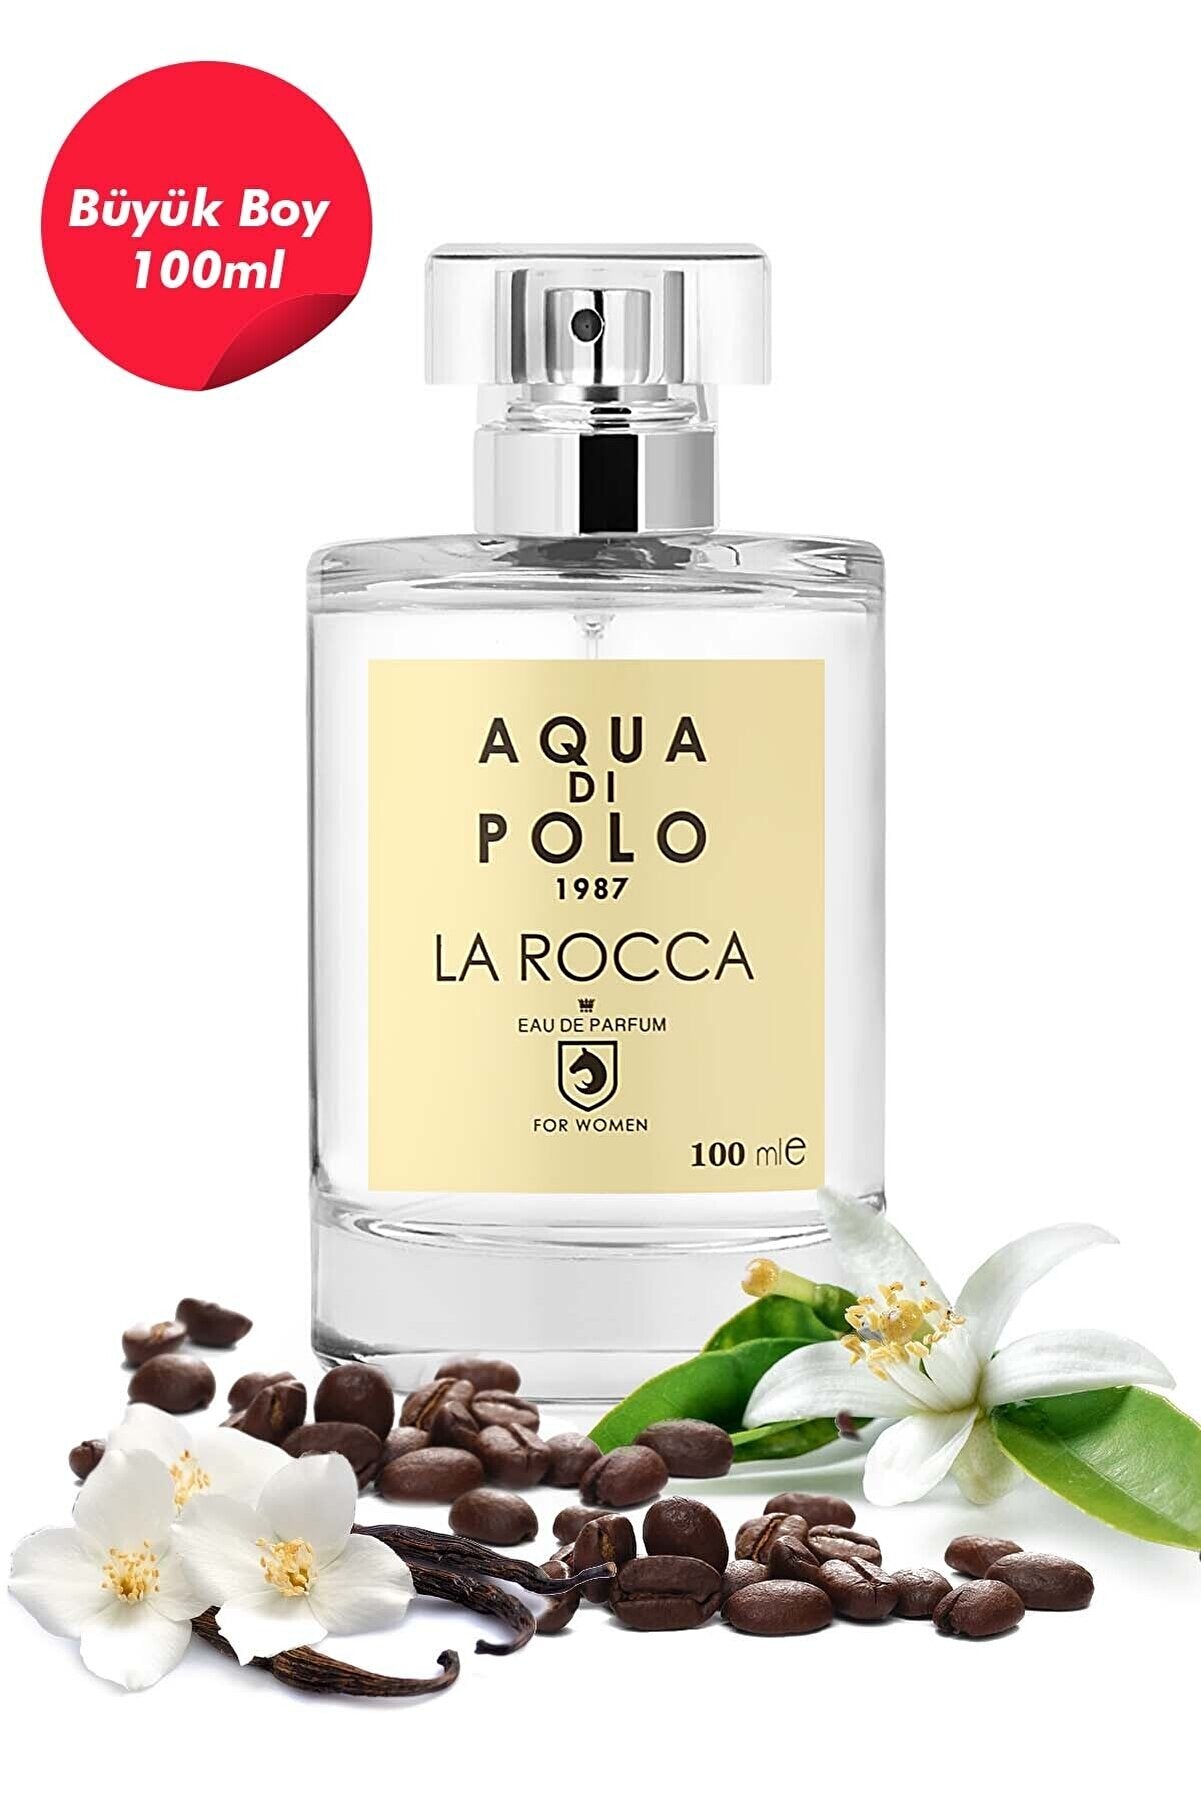 Aqua di Polo 1987 La Rocca 100 ml EDP Kadın Parfüm ve Red Erkek Parfüm 100 ml Edp 2'li Parfüm Seti STCC021152